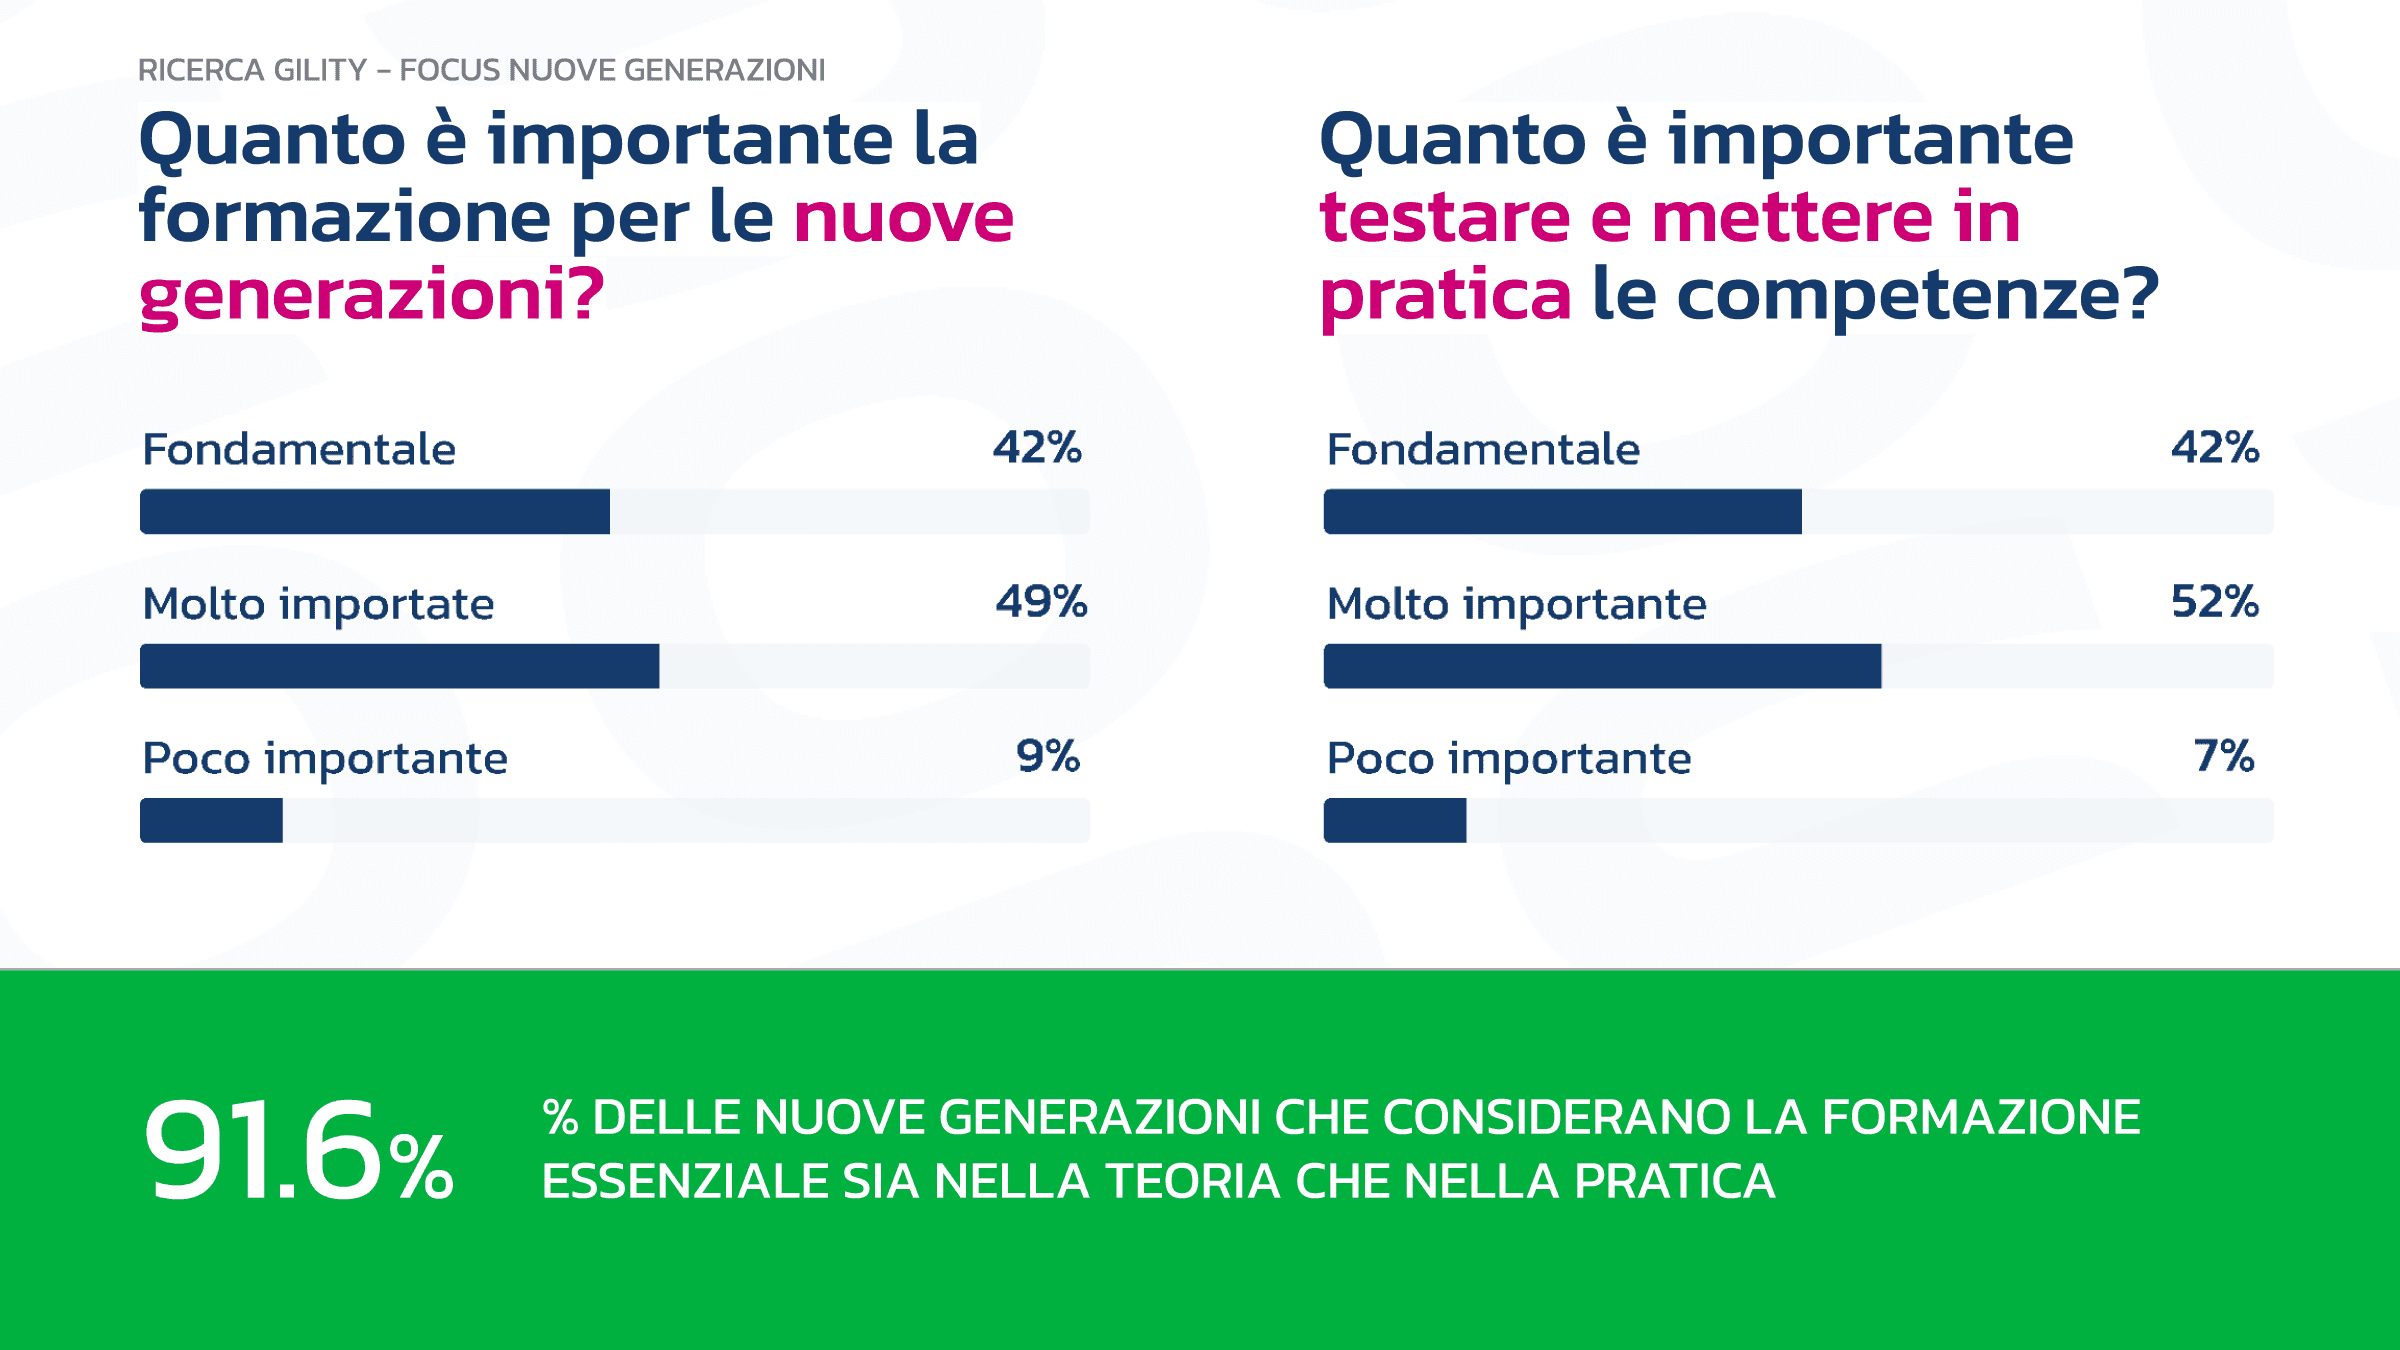 infografica sull'importanza della formazione aziendale per le nuove generazioni, per il 91.6% è essenziale